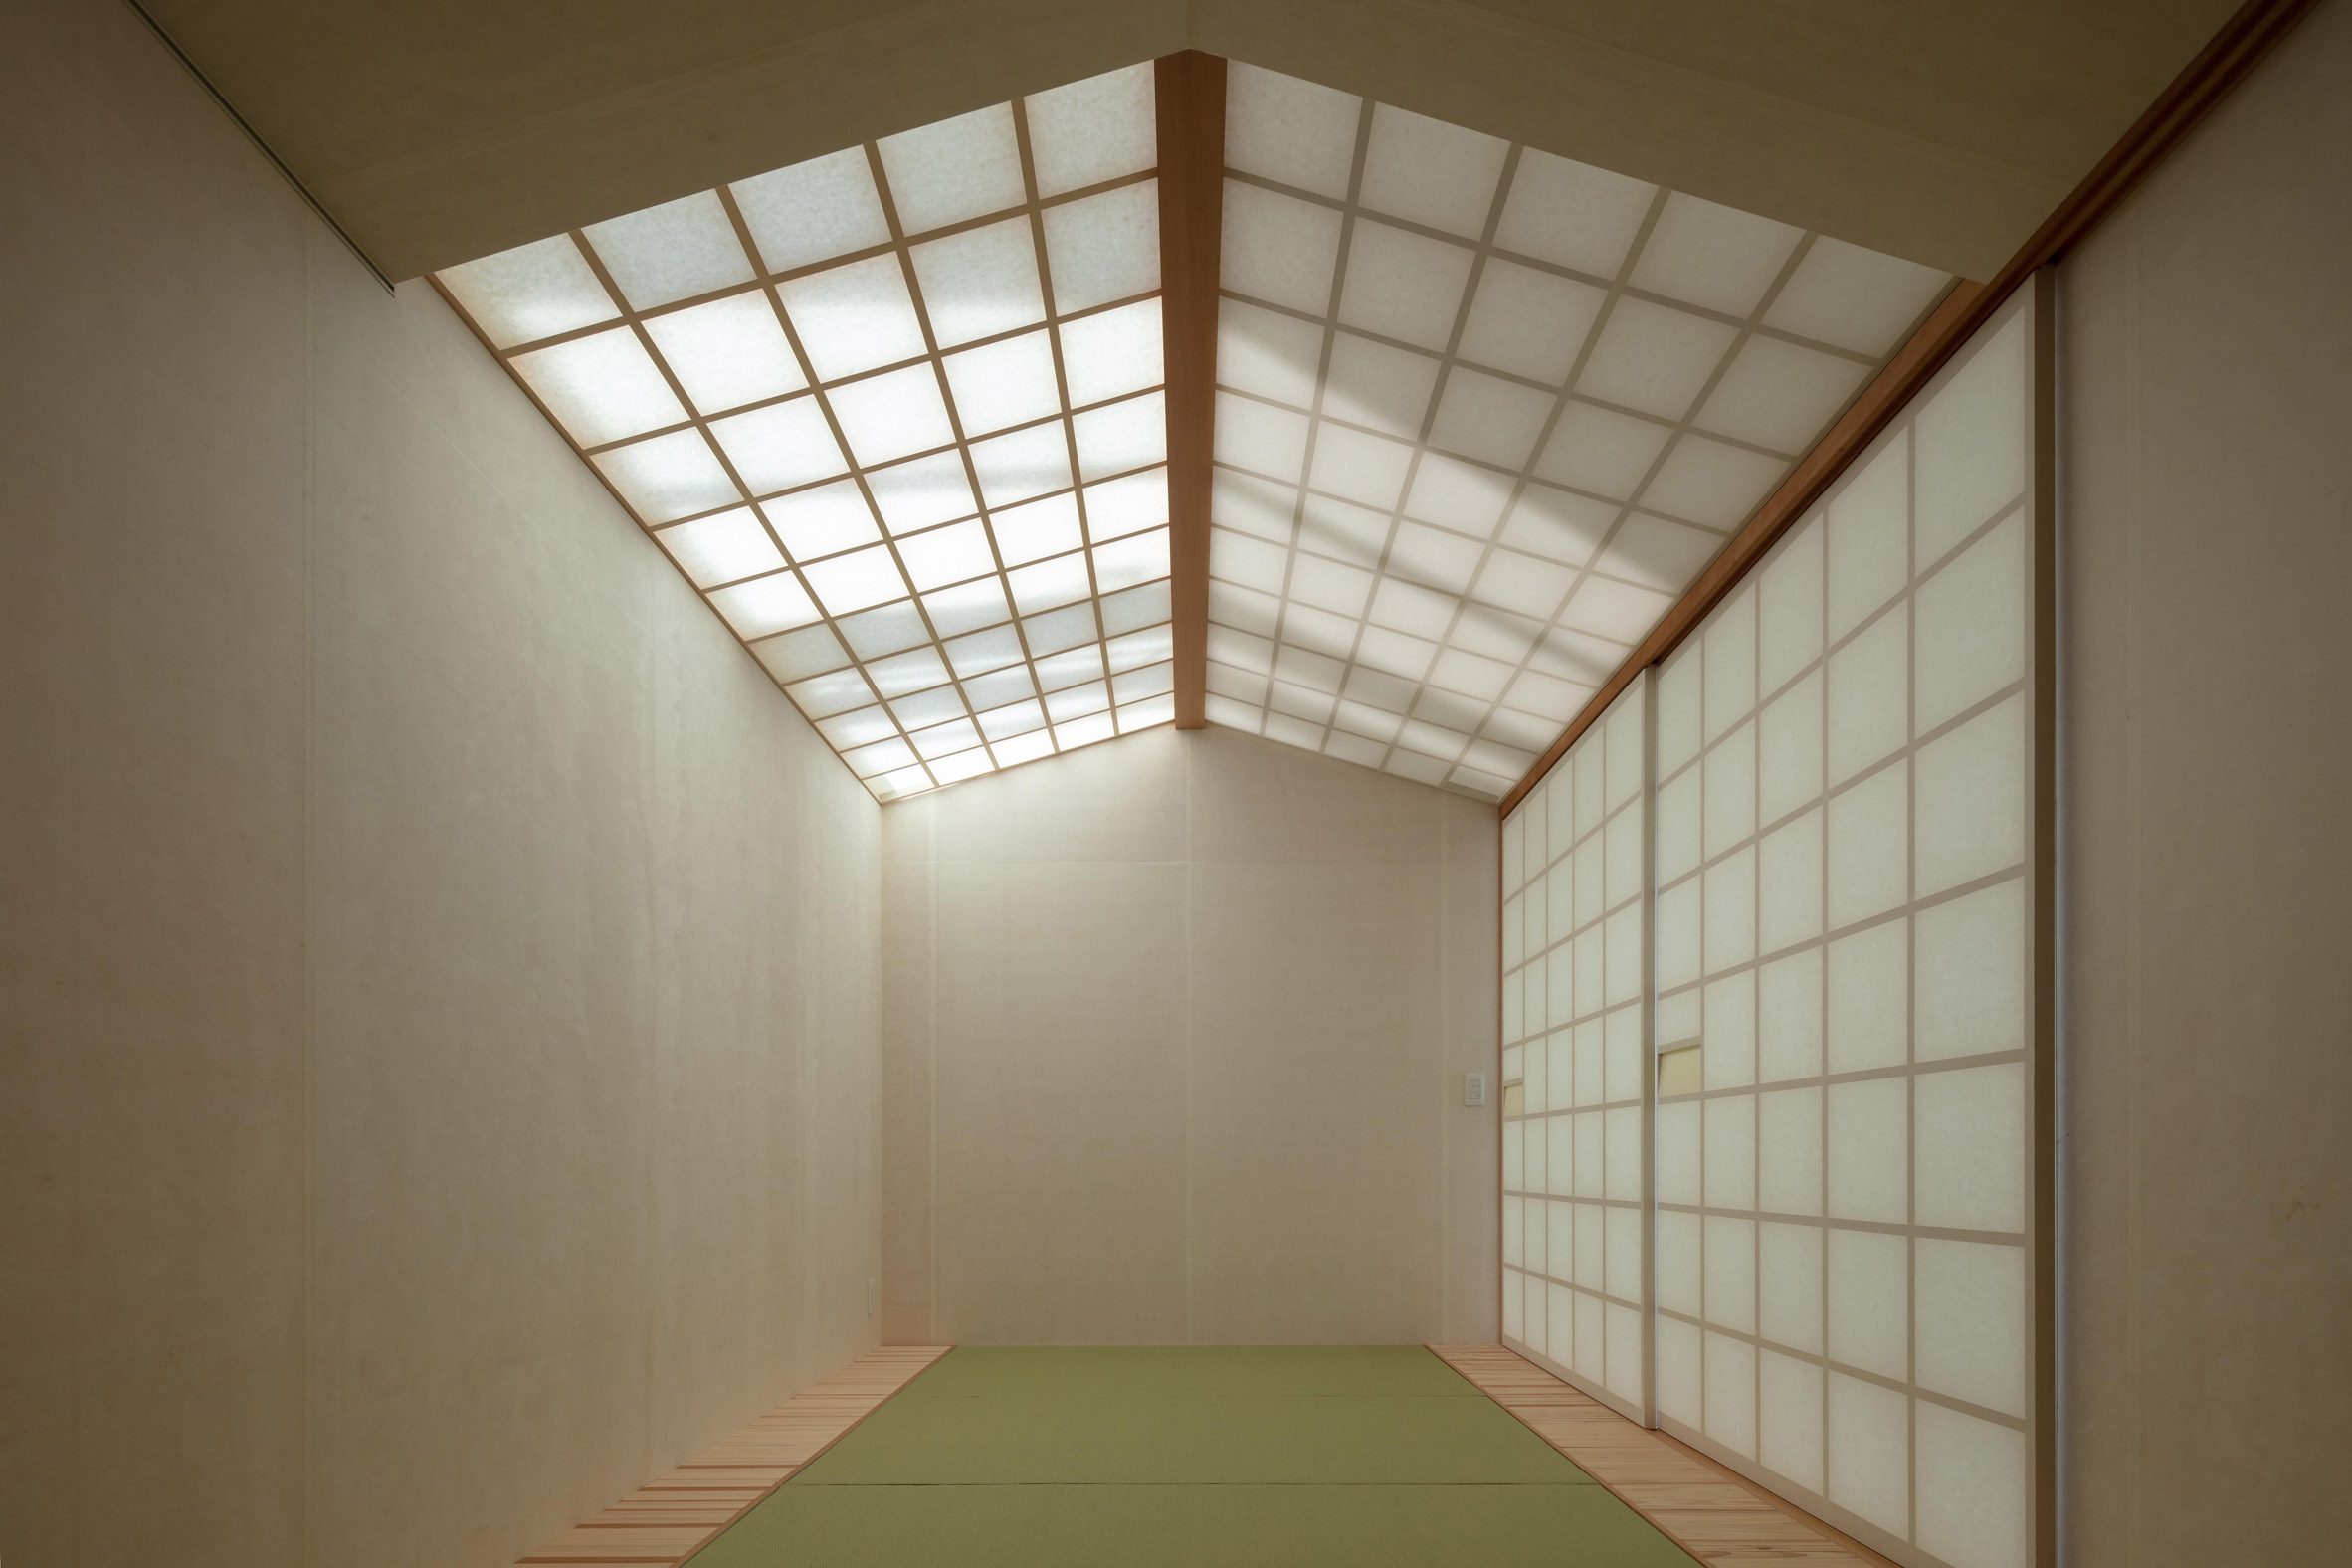 A Japanese tatami room